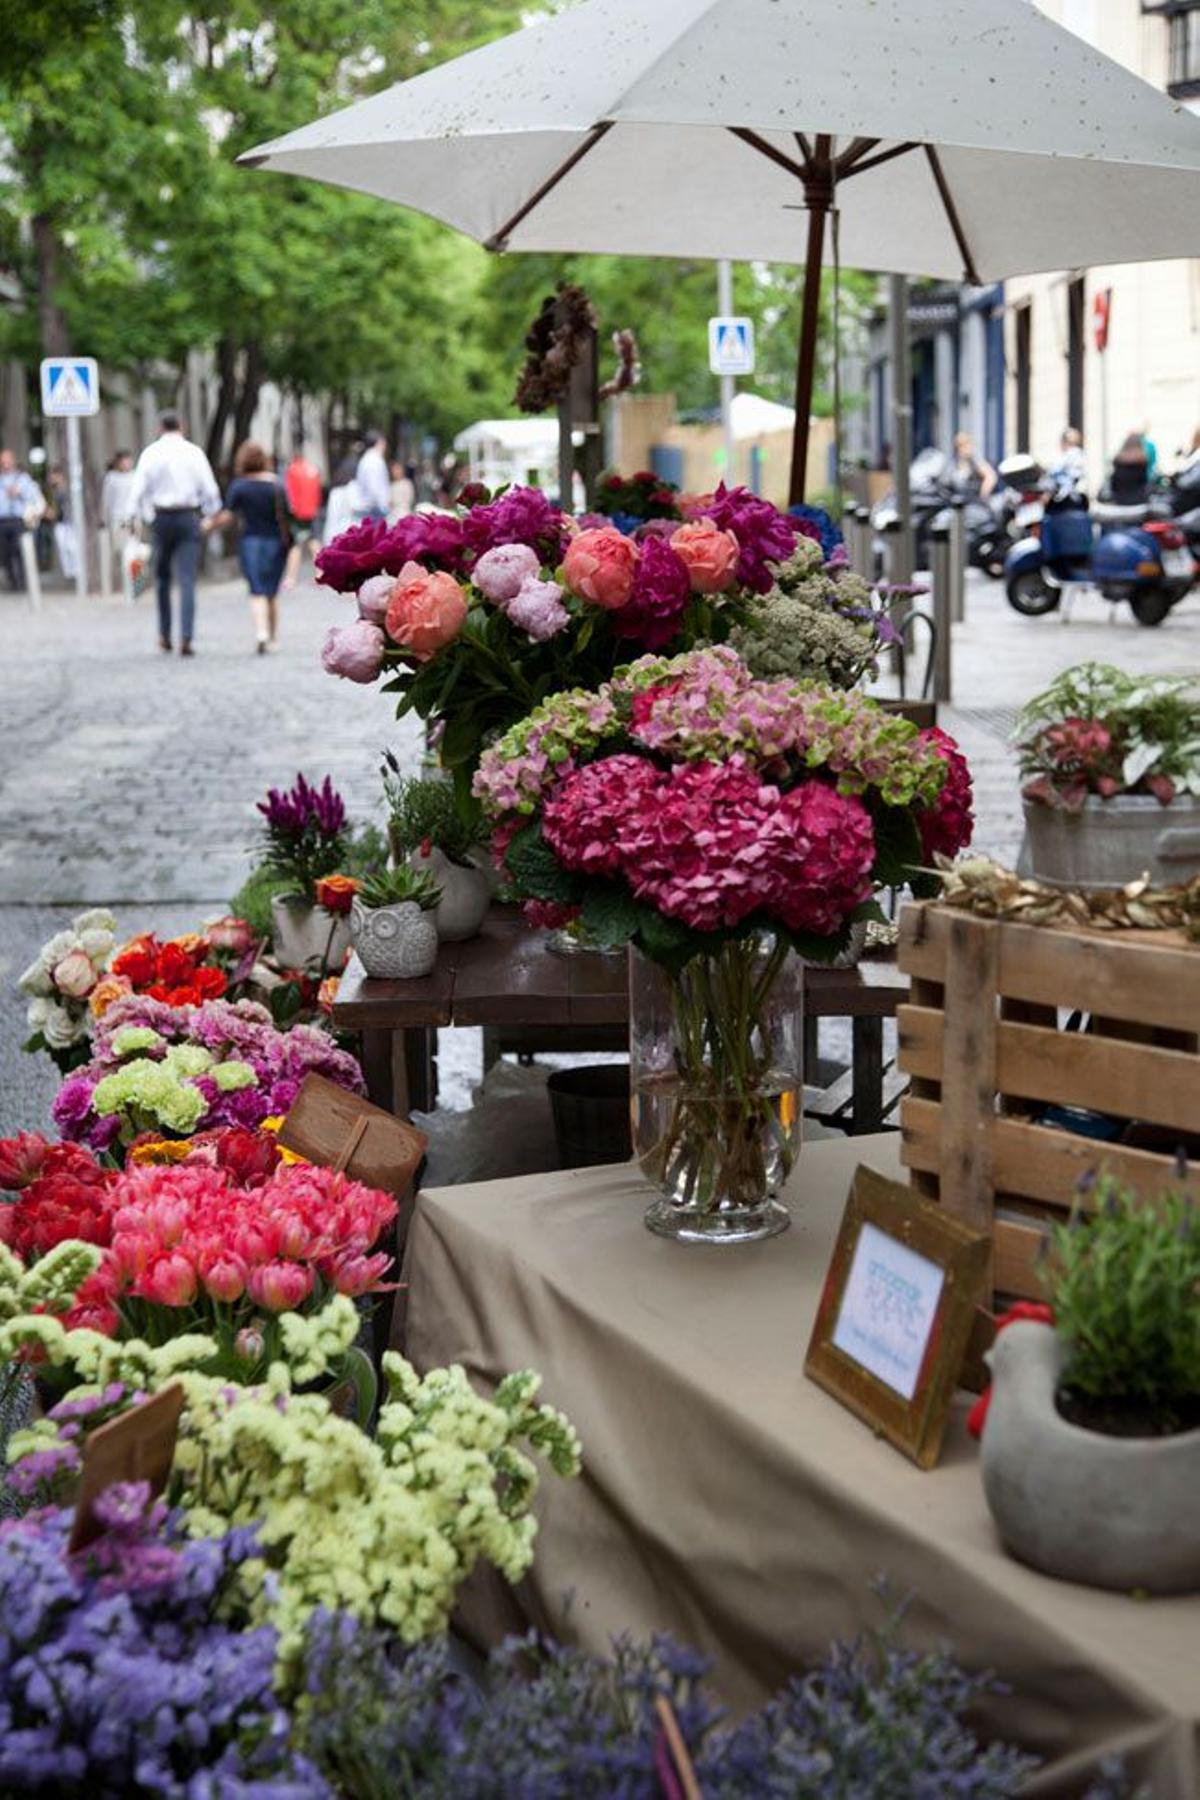 Mercado de las flores de primavera (Madrid)